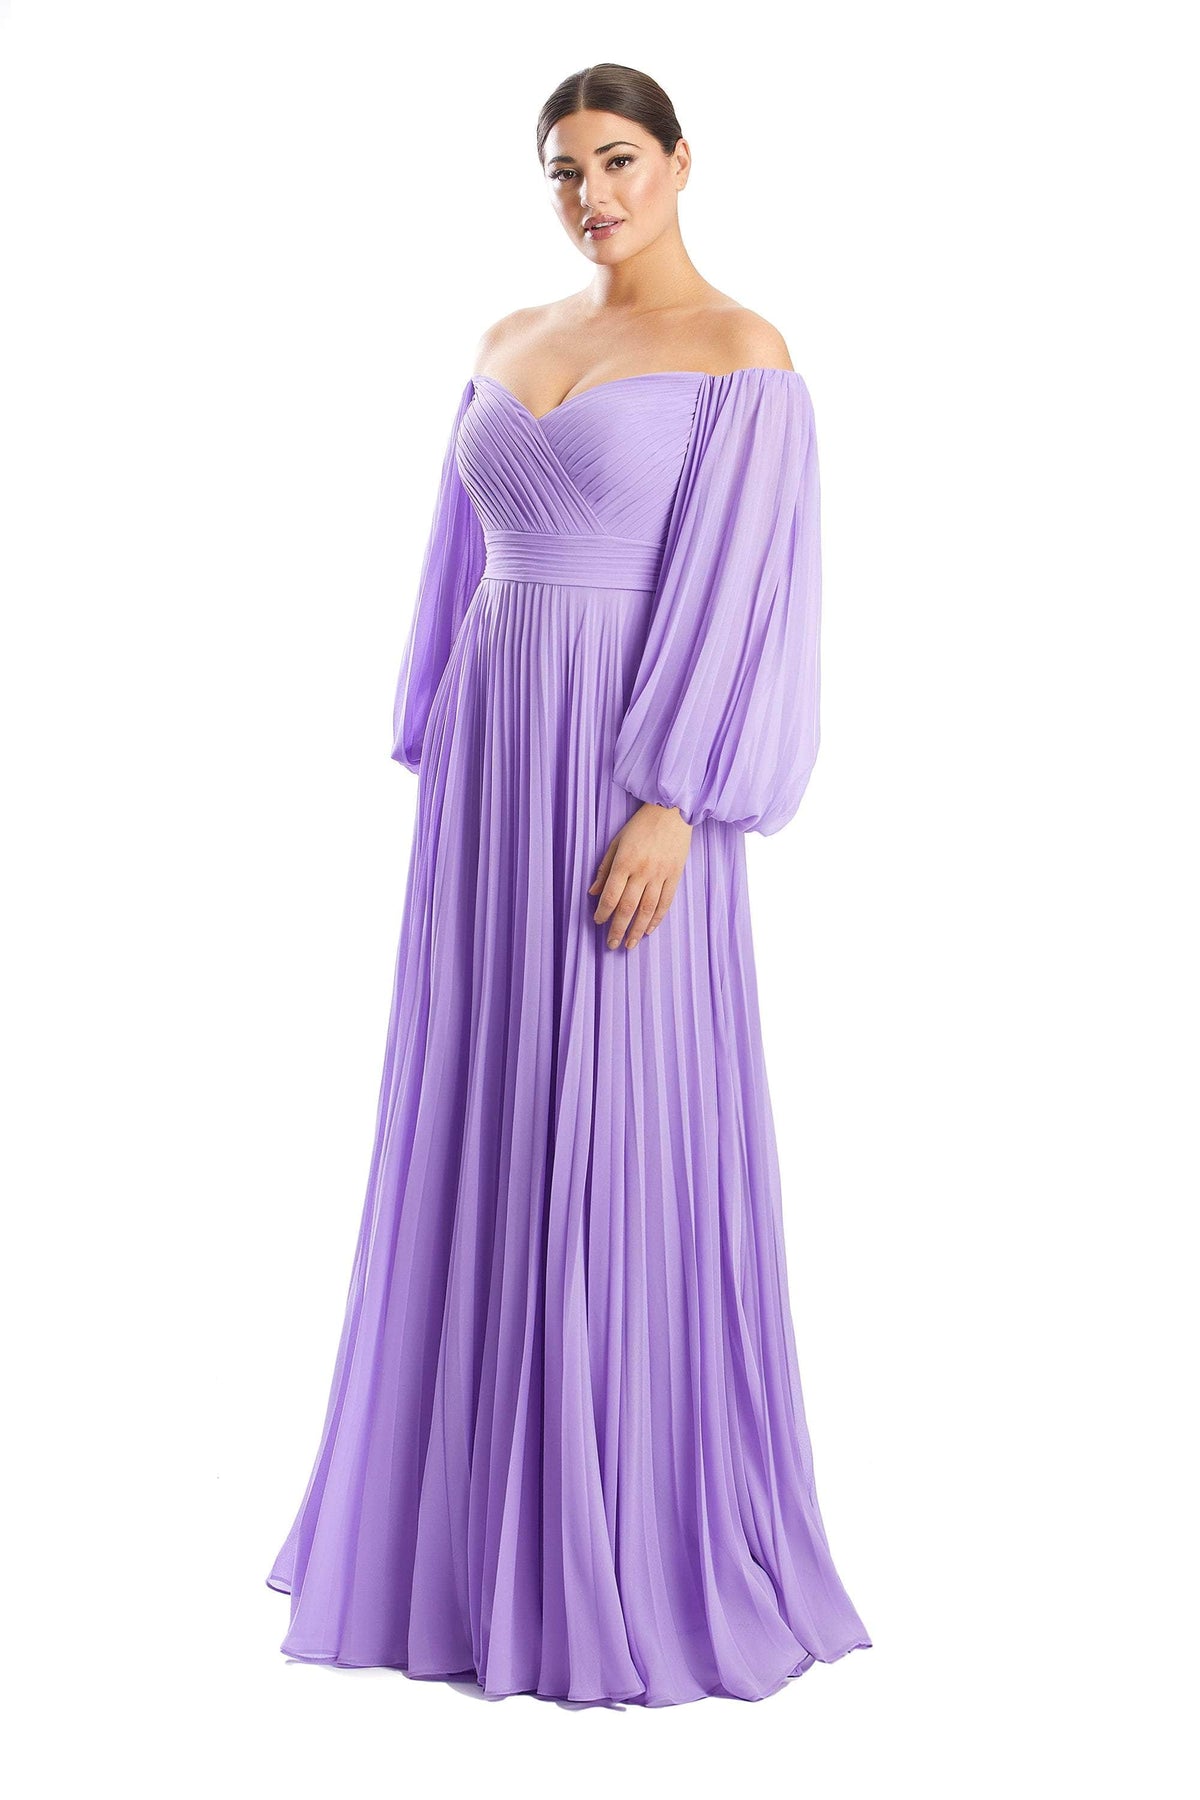 Alexander by Daymor 1792S23 - Bishop Sleeved Formal Dress Evening Dresses 00 / Lavender Mist